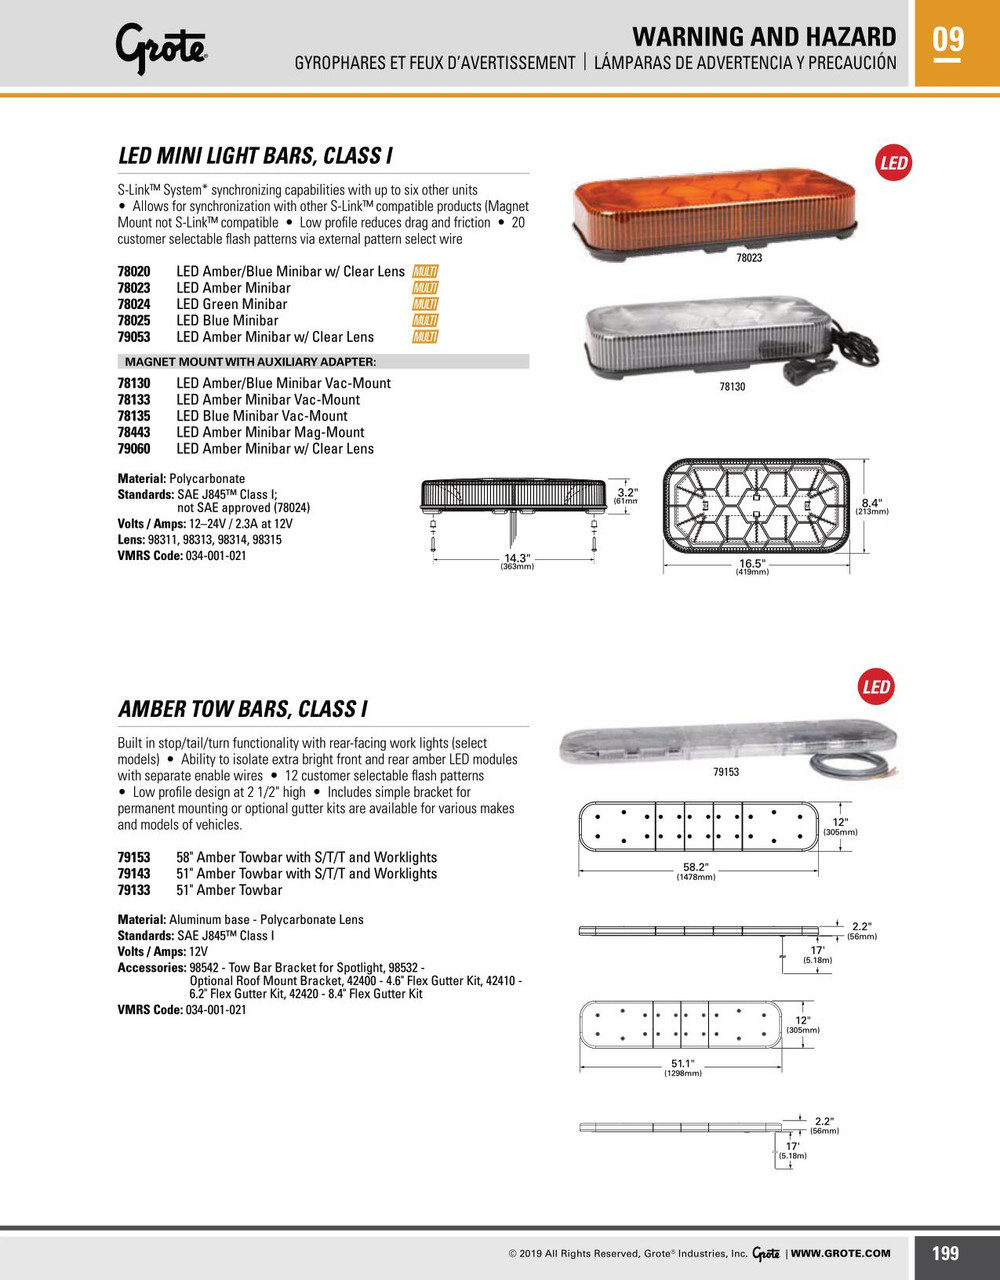 Lamp Bar Accessories Flex Gutter Kit  42420